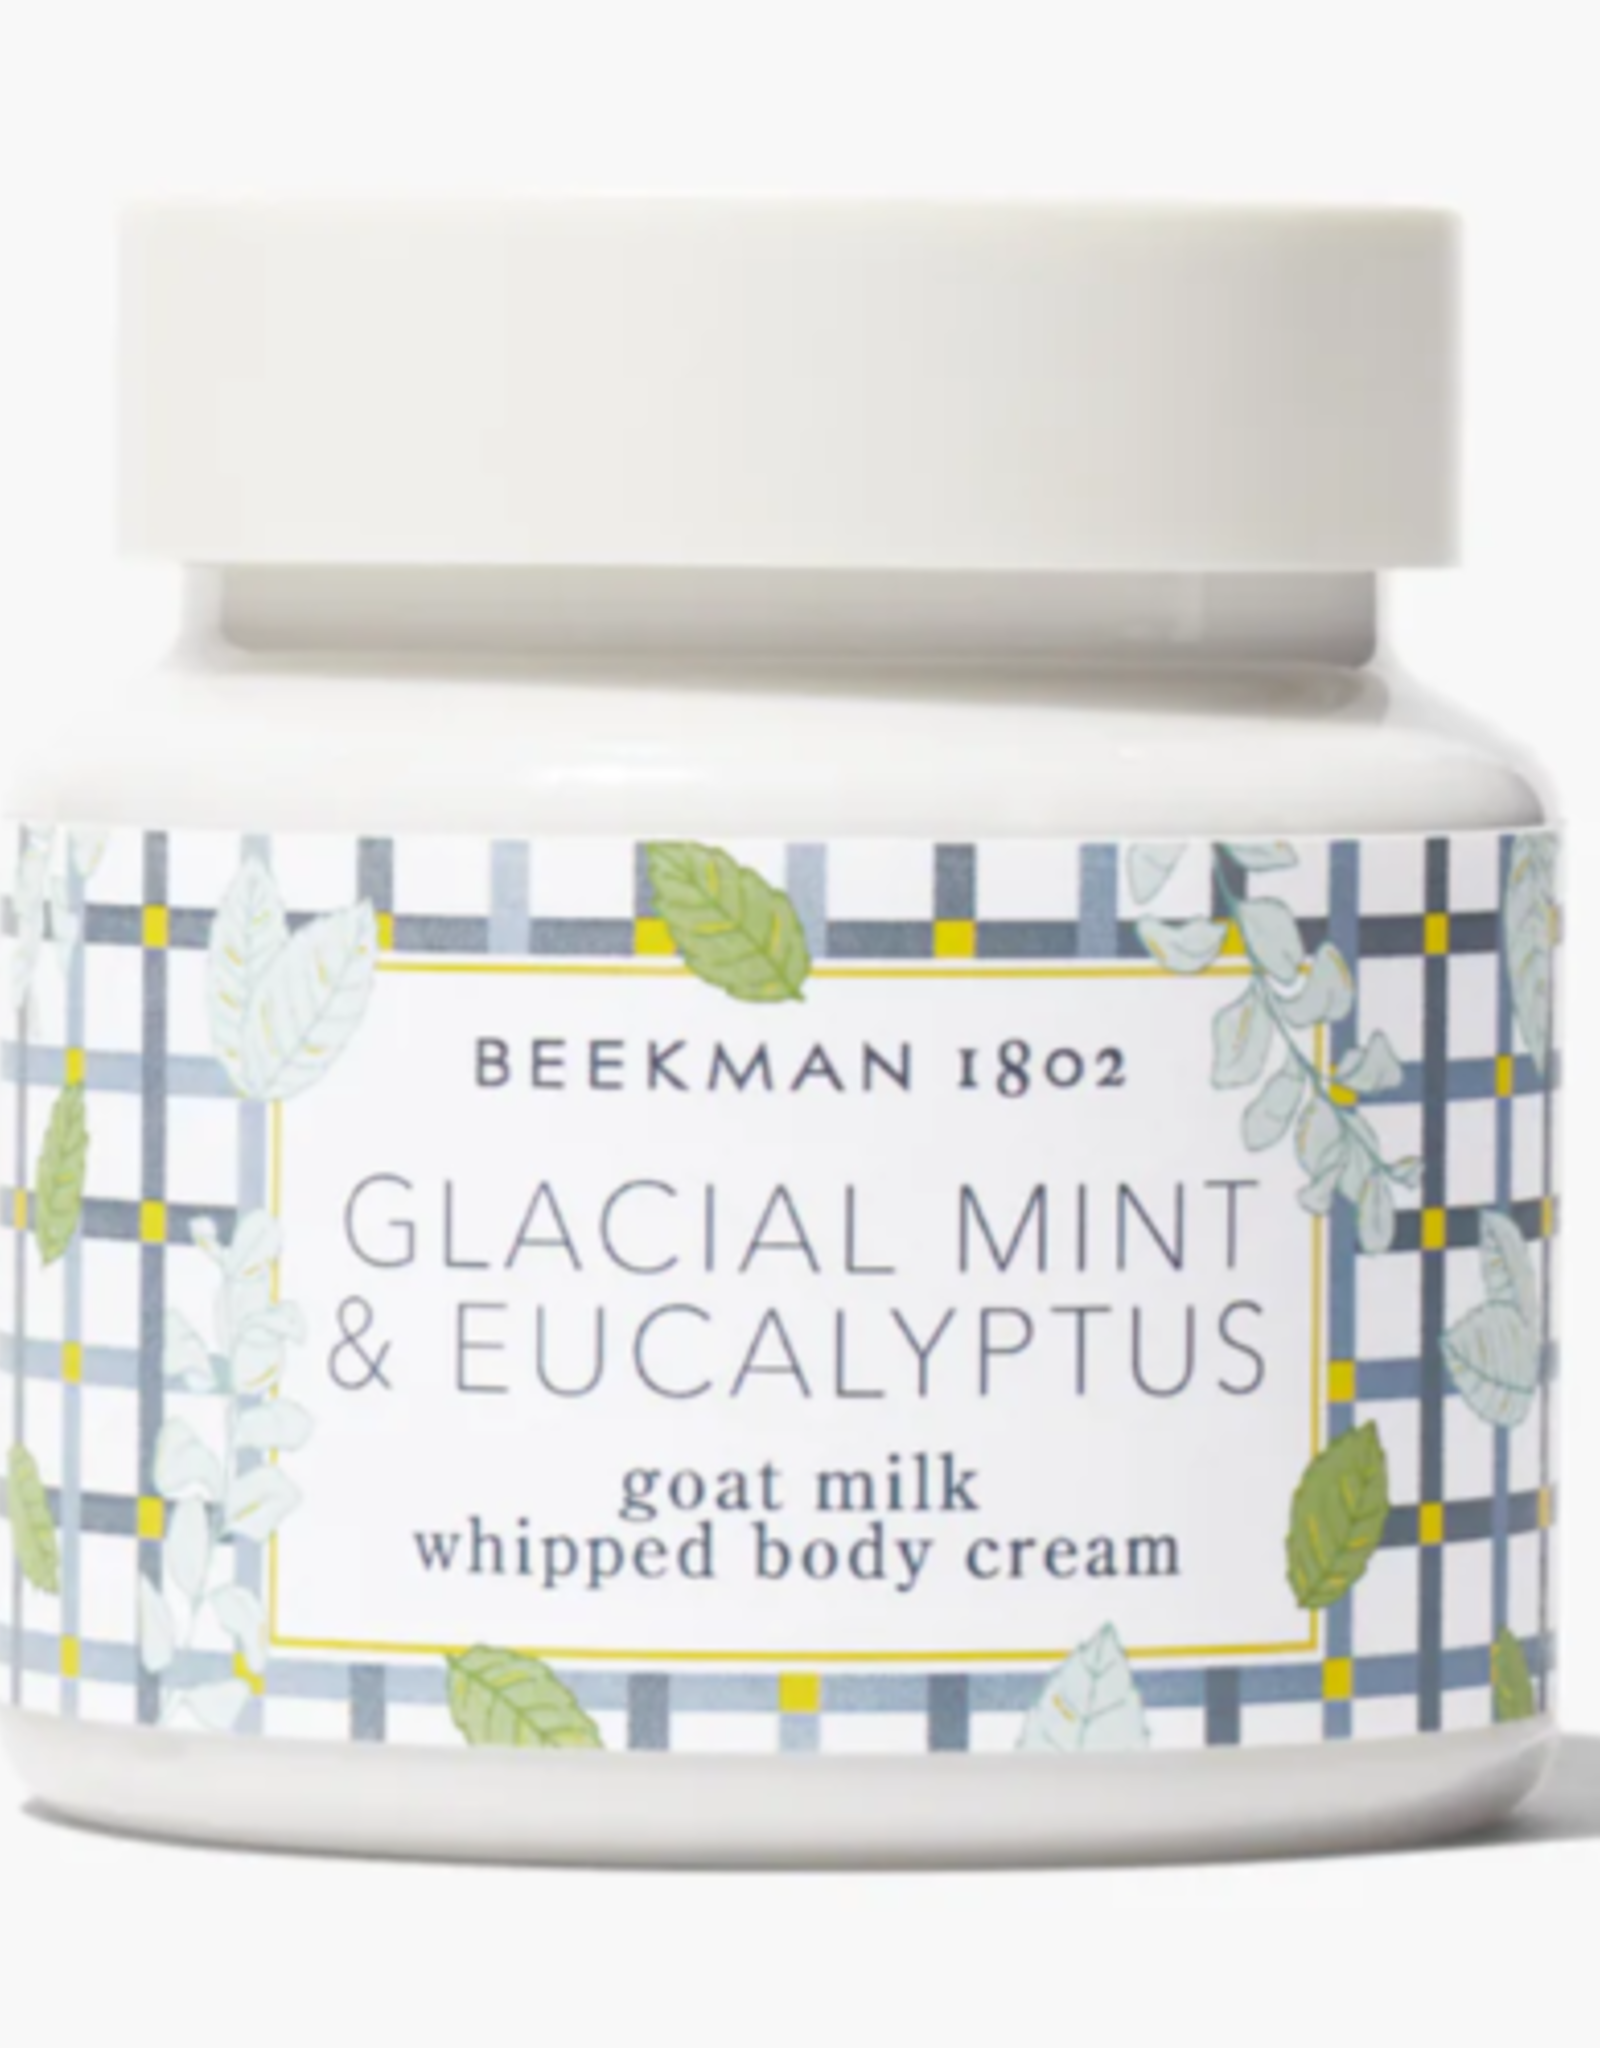 Beekman 1802 Glacial Mint & Eucalyptus